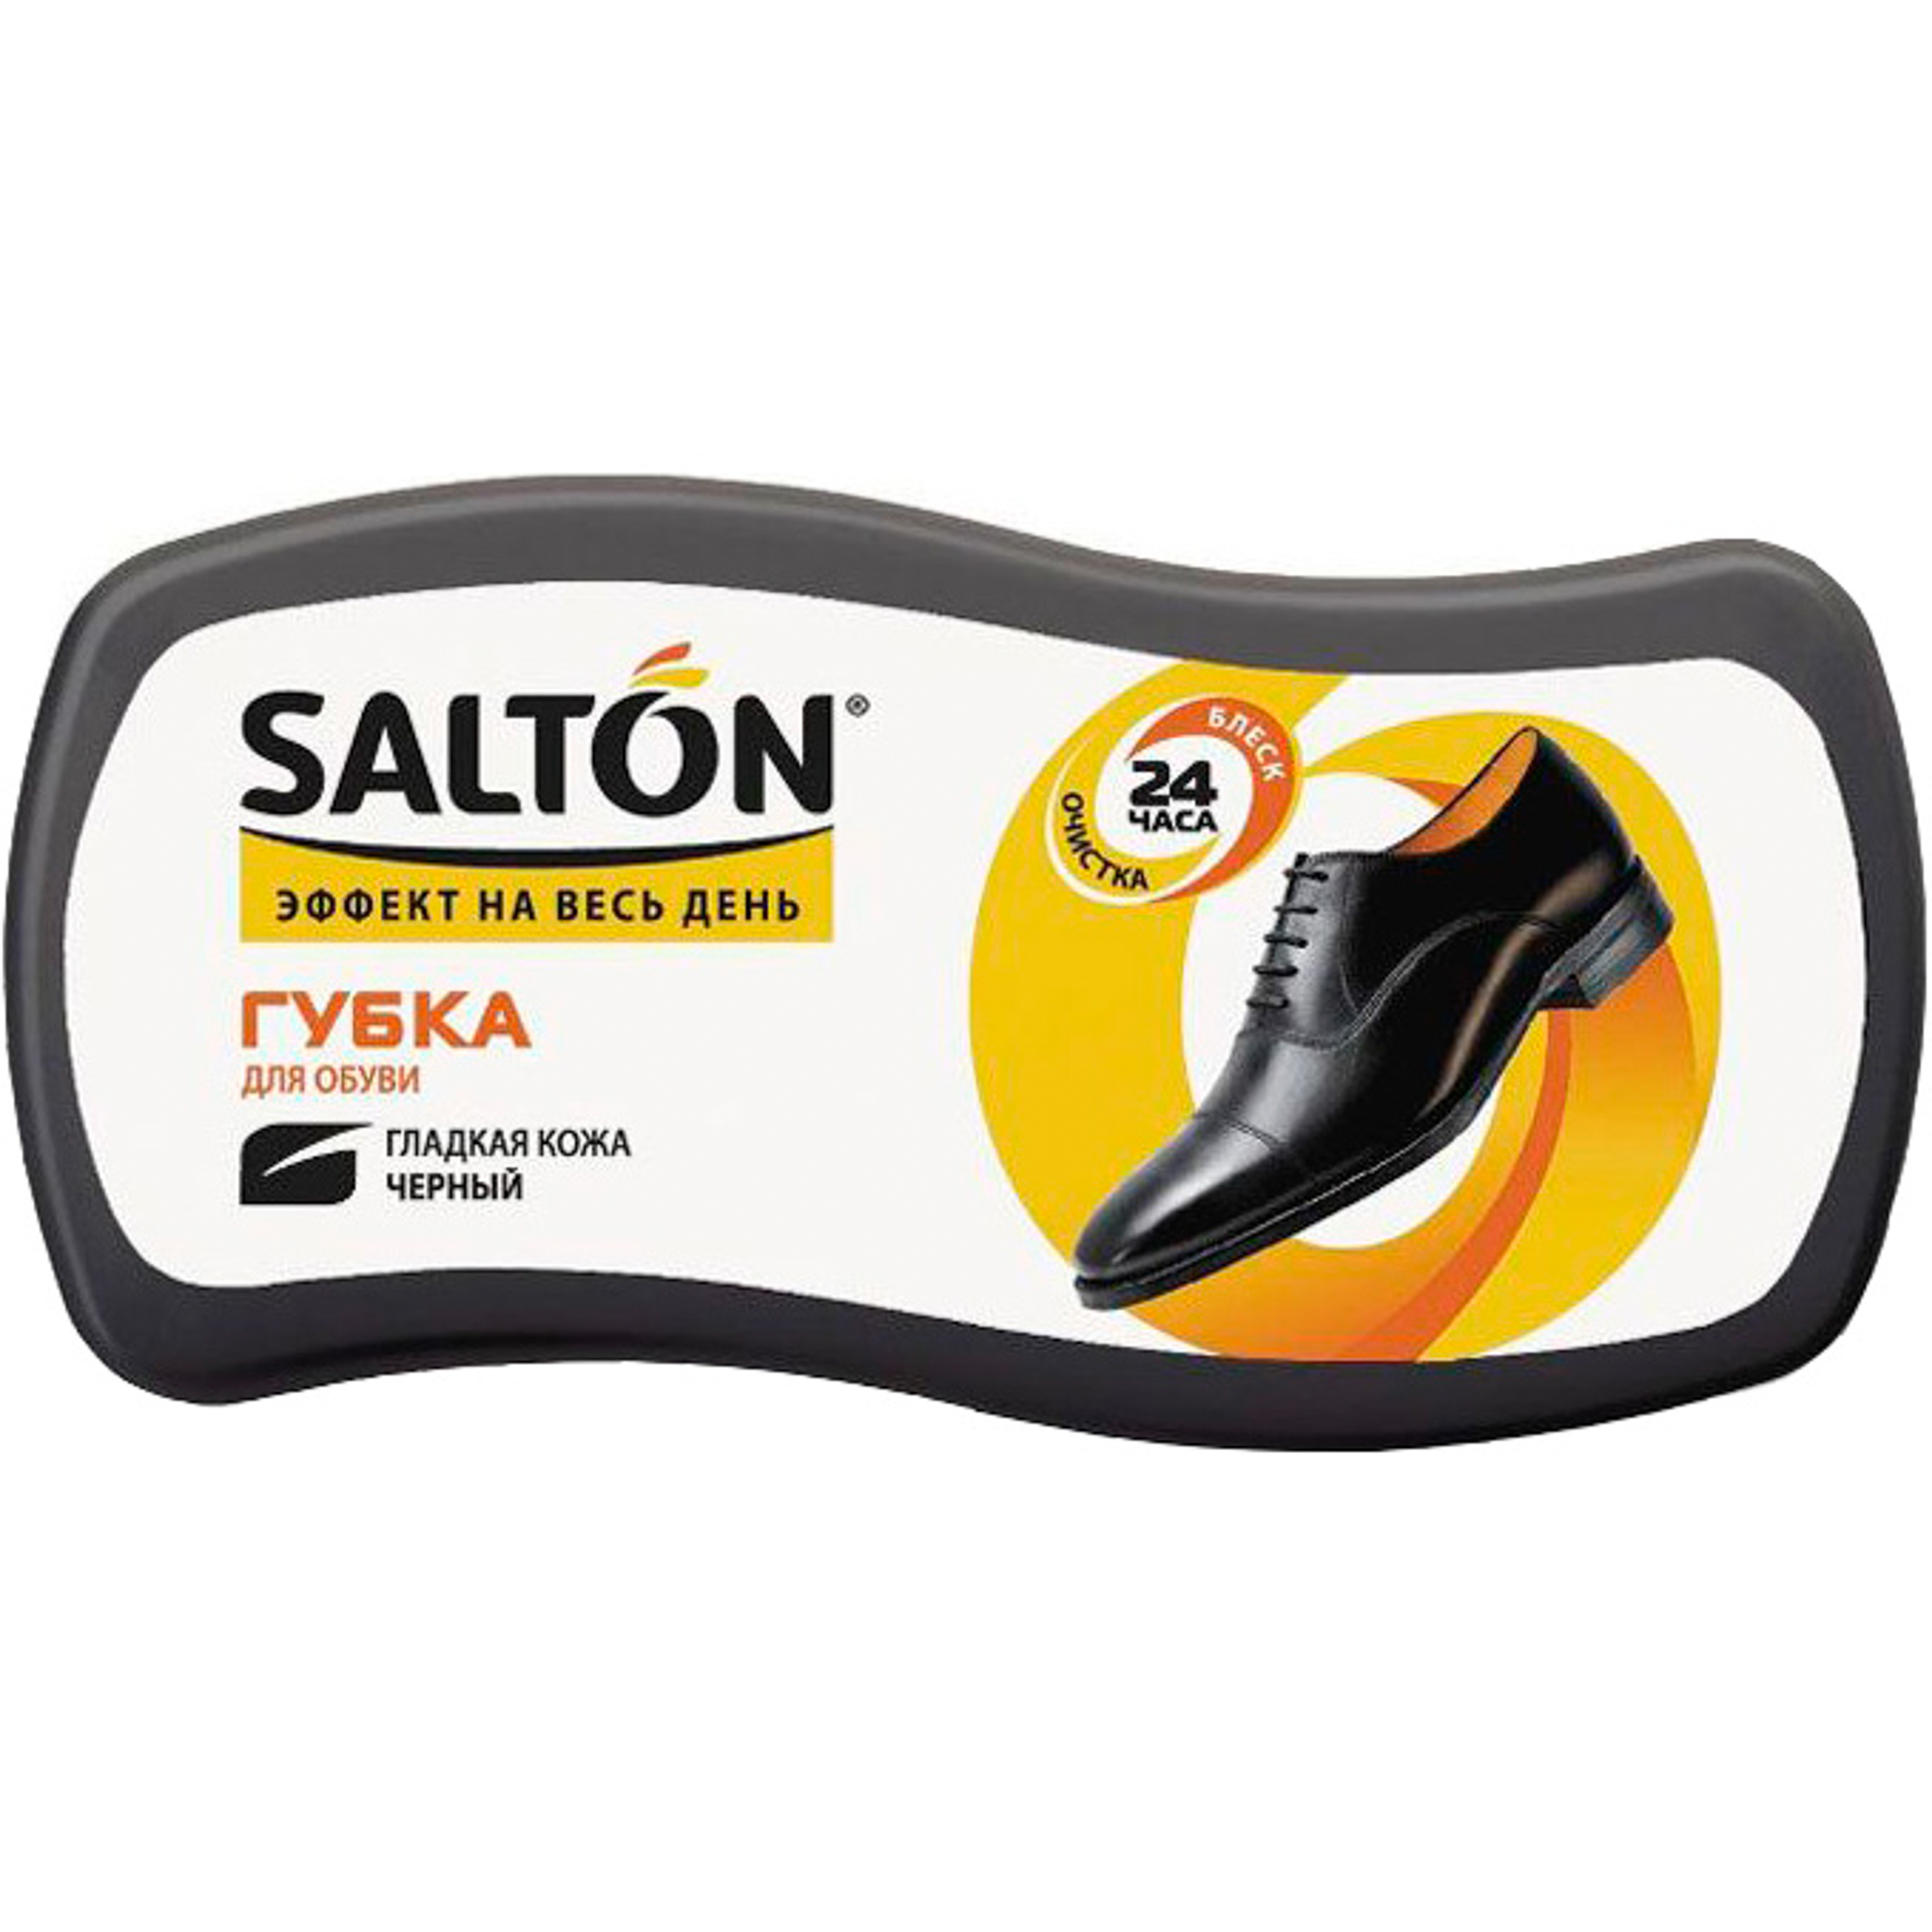 Губка Salton Волна для обуви из гладкой кожи 52/09 губка для обуви бесцветная salton волна для гладкой кожи с норковым маслом